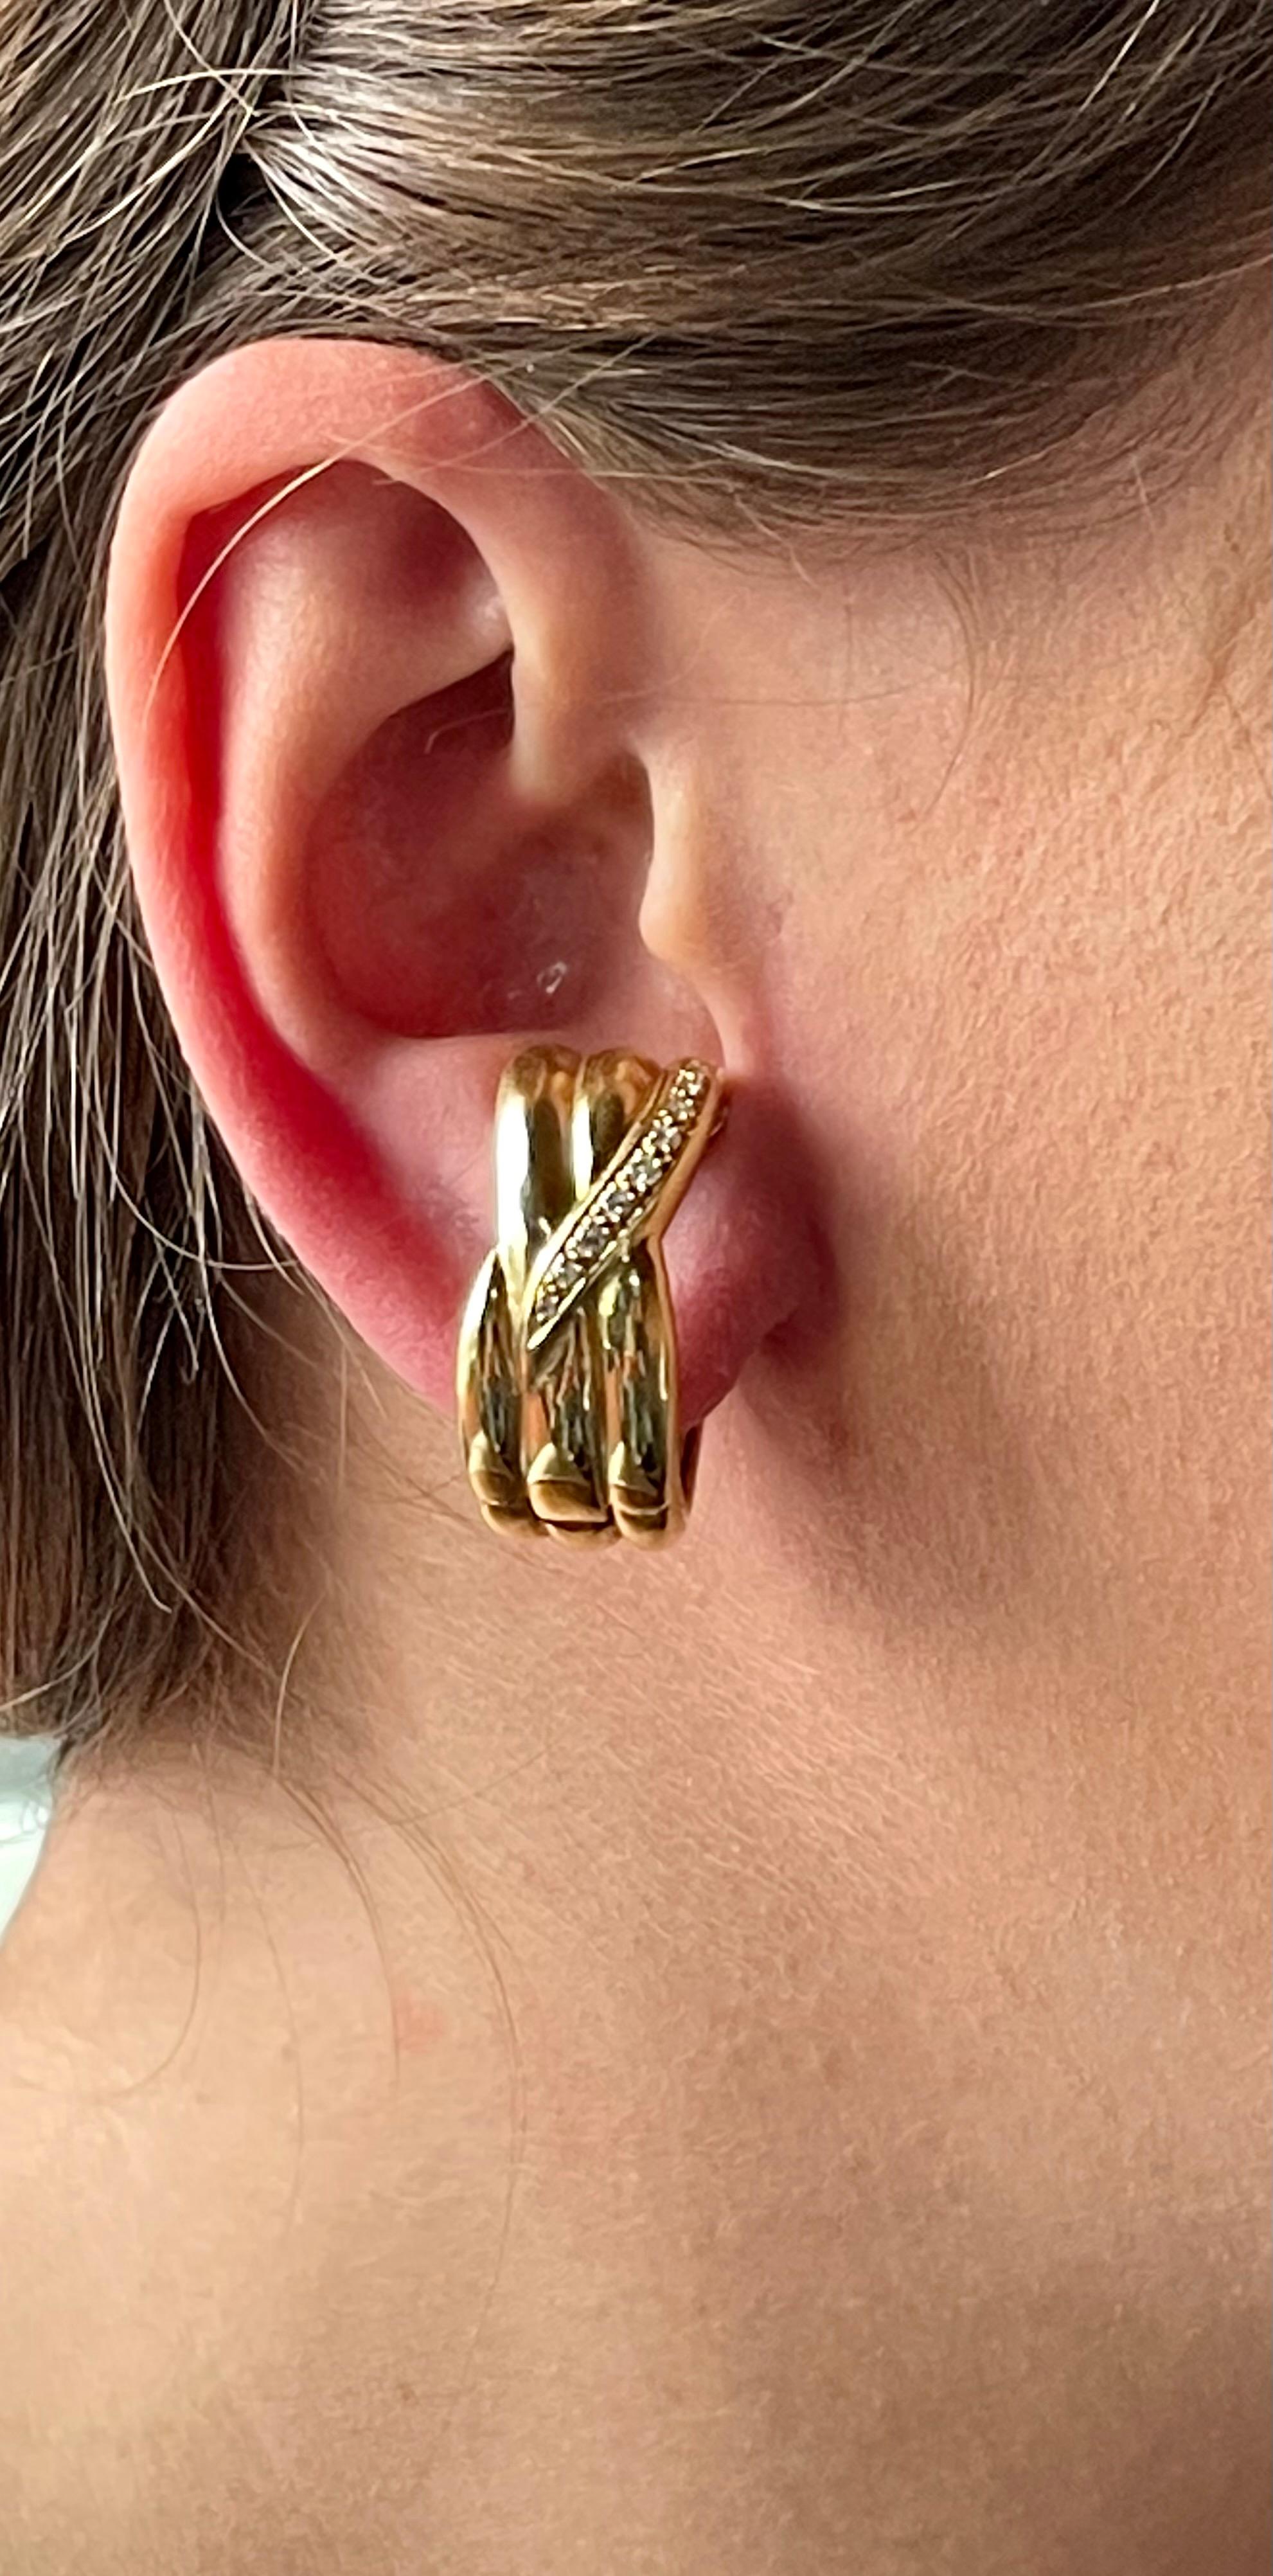 1.2 cm hoop earrings